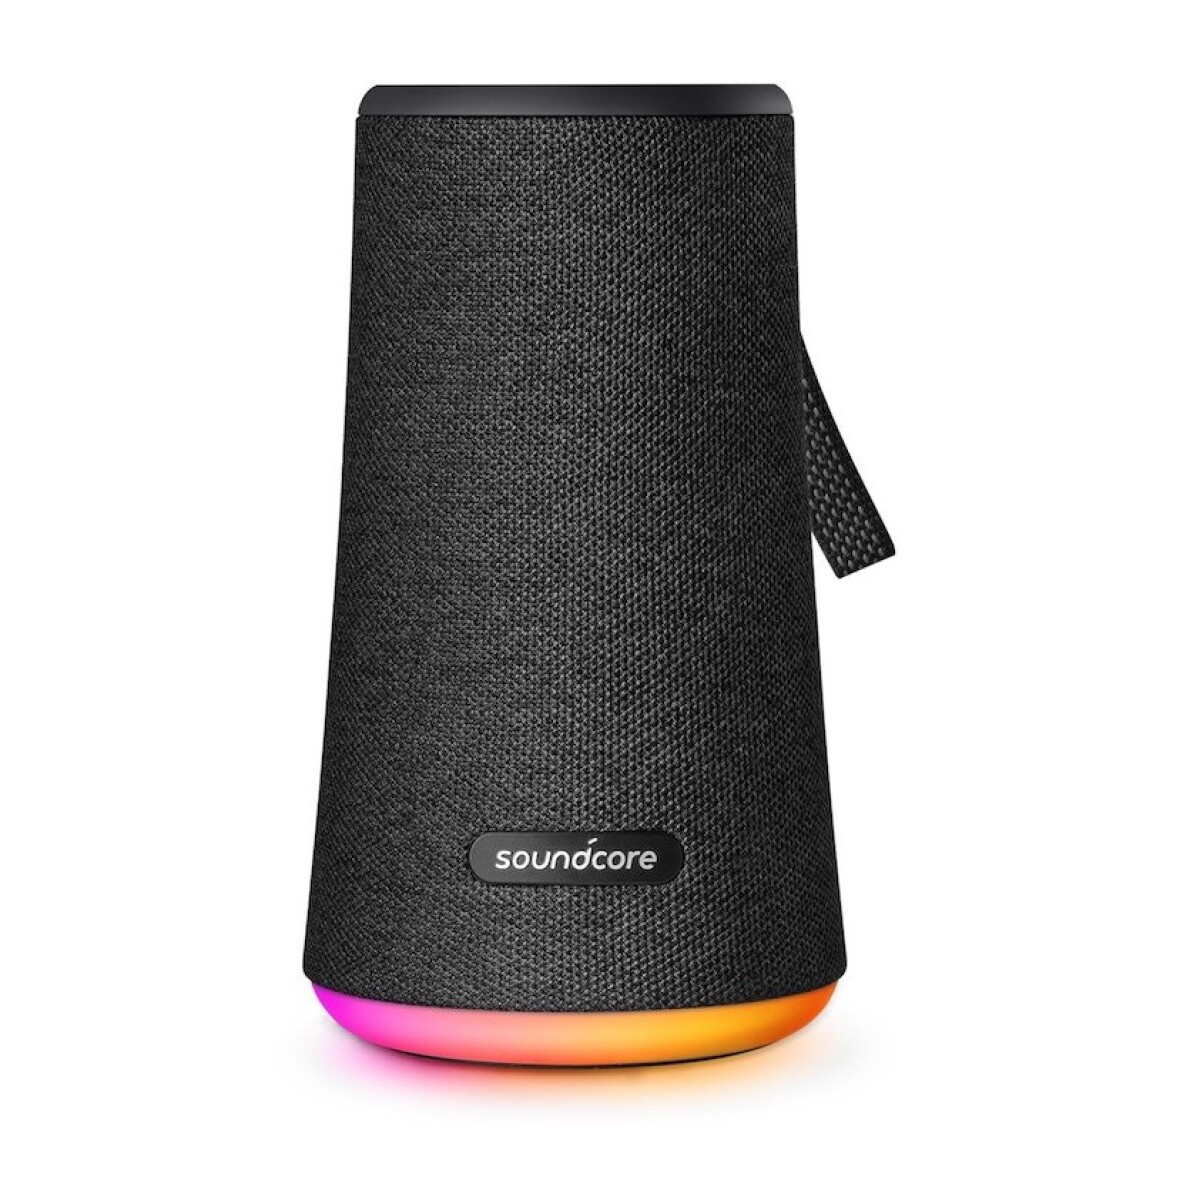 Parlante Portátil Anker Soundcore Flare Bluetooth | Audio 360 con Luces LED - Negro 